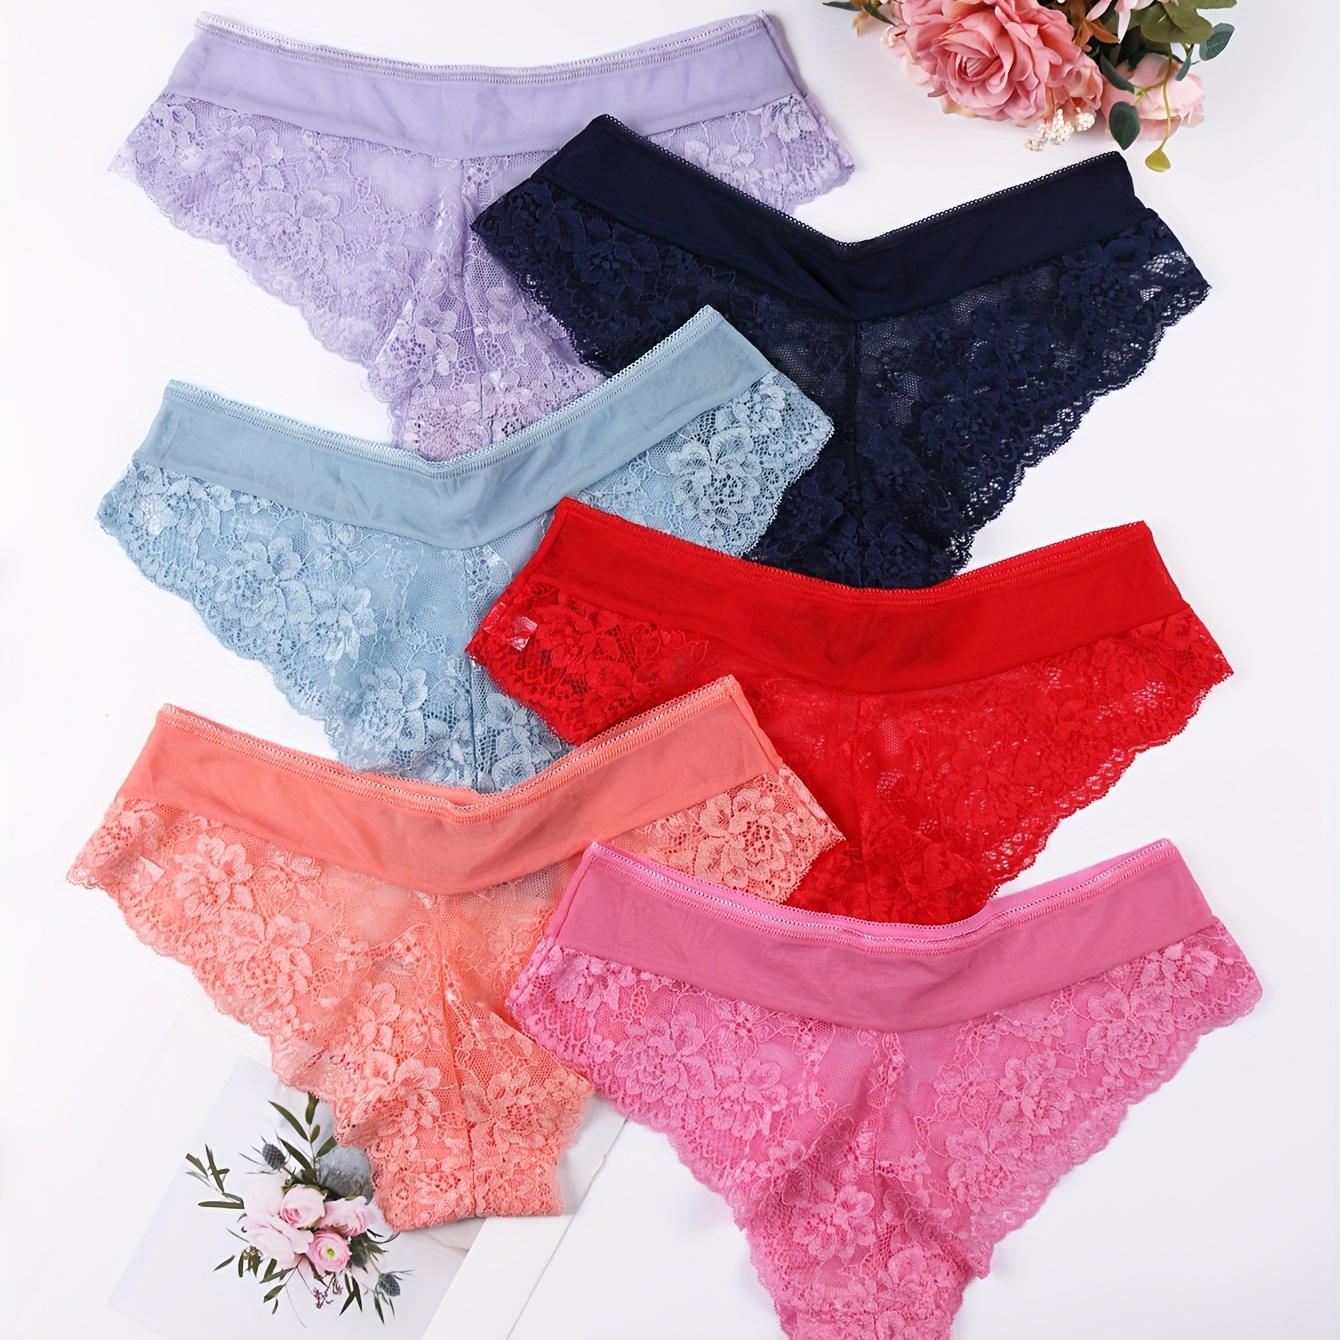 

6pcs Hot Floral Lace Briefs, Comfy & Breathable Intimate Panties, Women's Lingerie & Underwear